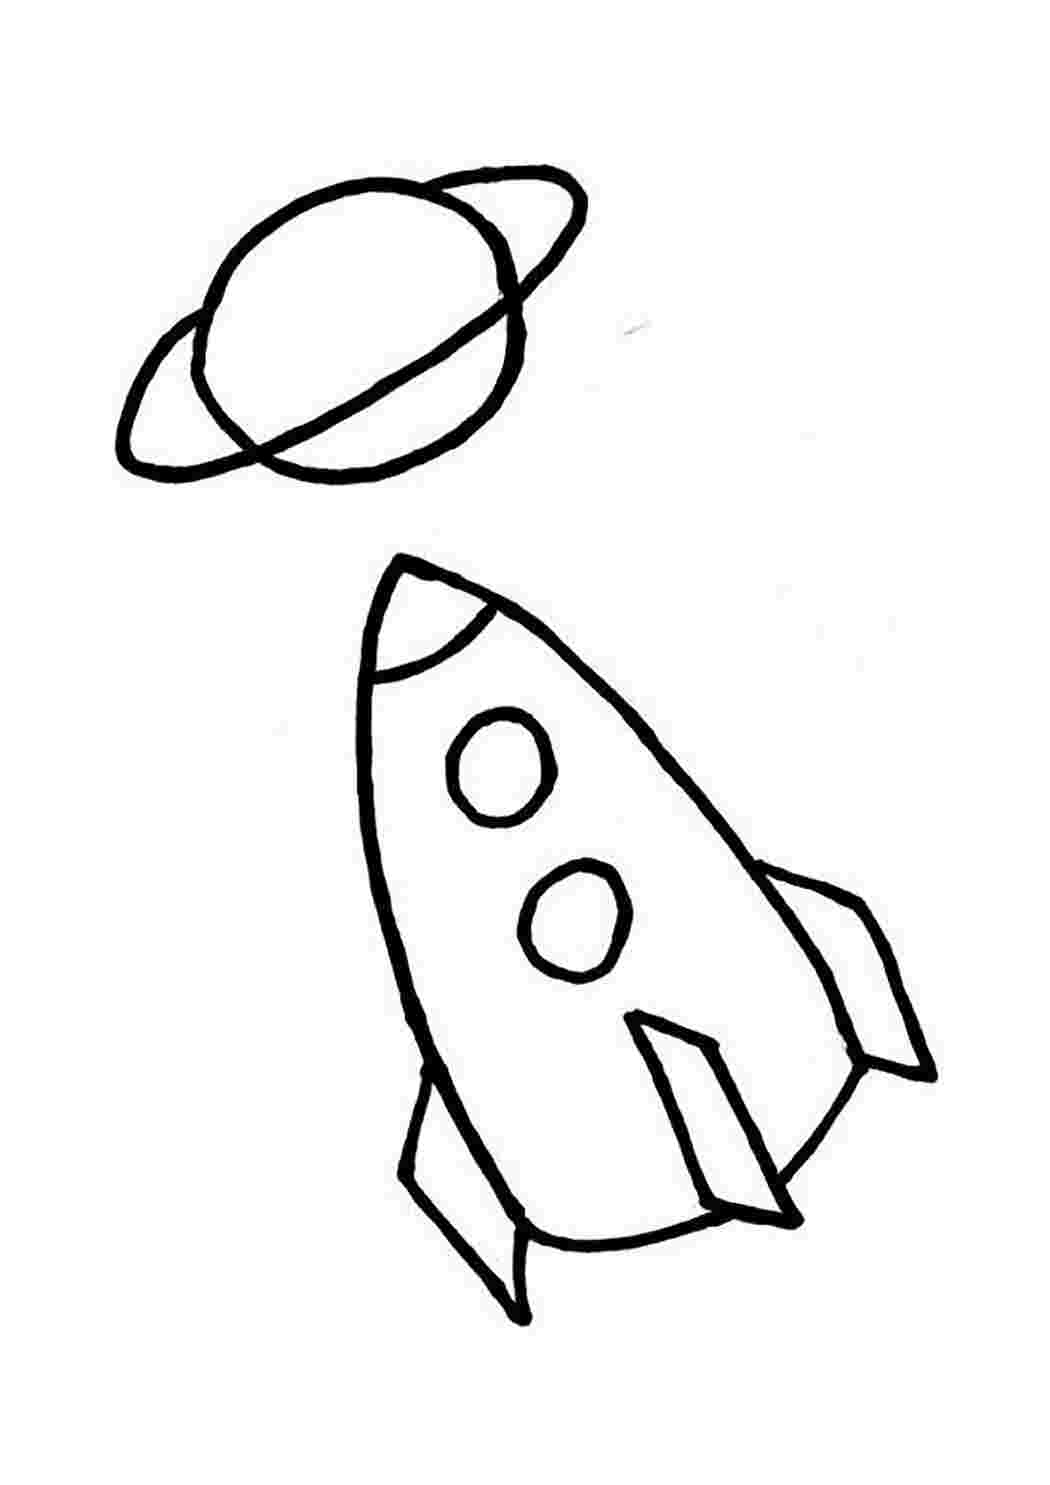 Ракета рисунок для детей 5 лет. Ракета раскраска. Ракета для рисования для детей. Ракета рисунок. Ракета раскраска для детей.